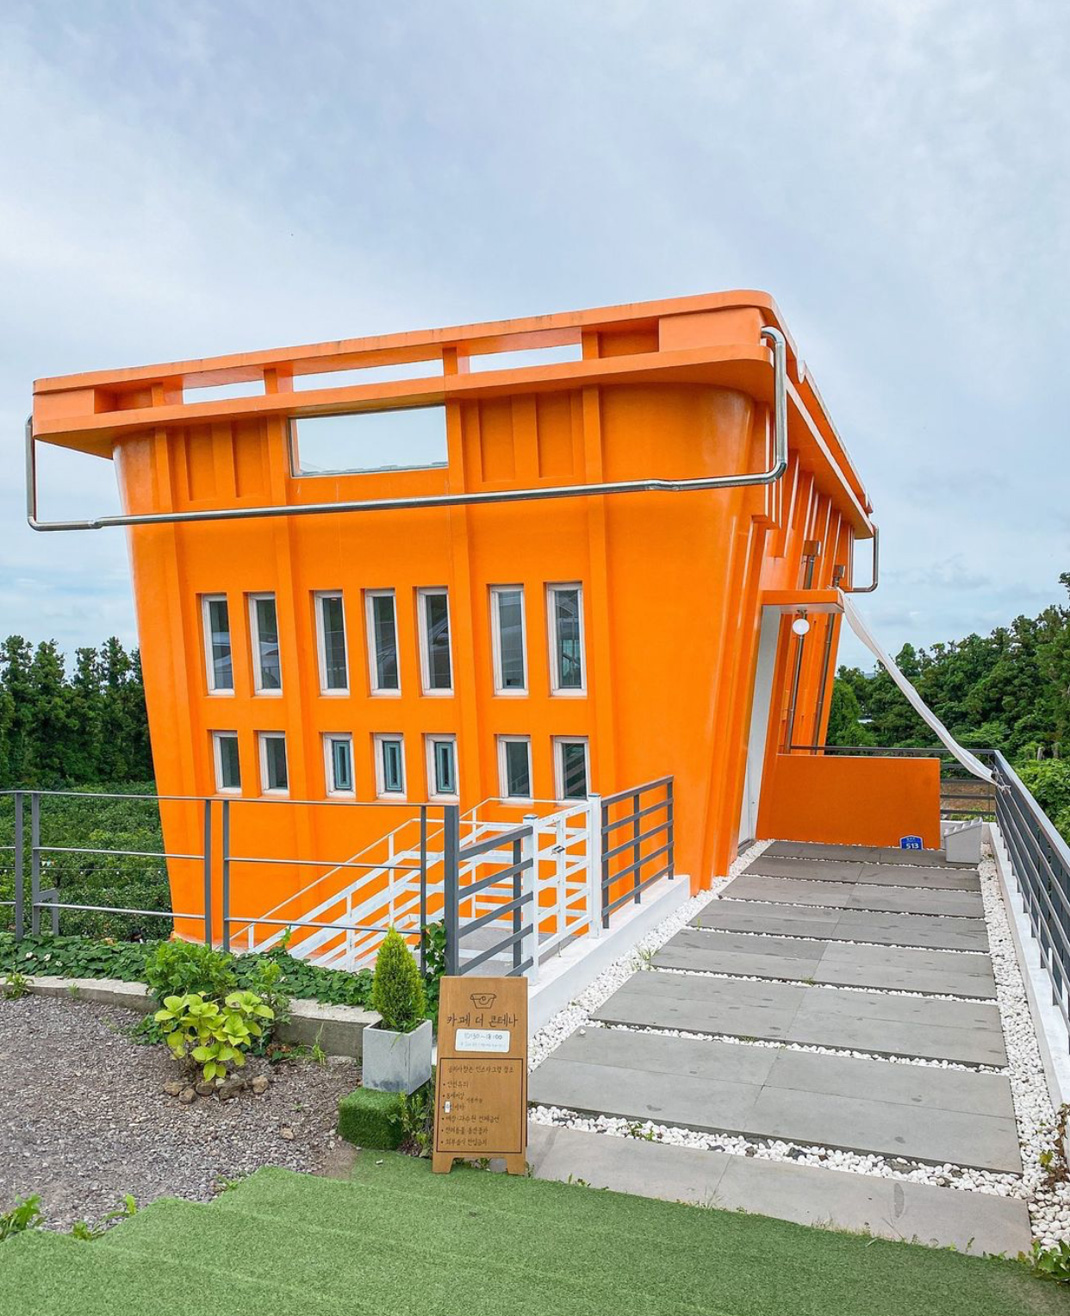 集装箱概念咖啡店空间 韩国 济州岛 咖啡店 集装箱 户外 橙色 logo设计 vi设计 空间设计